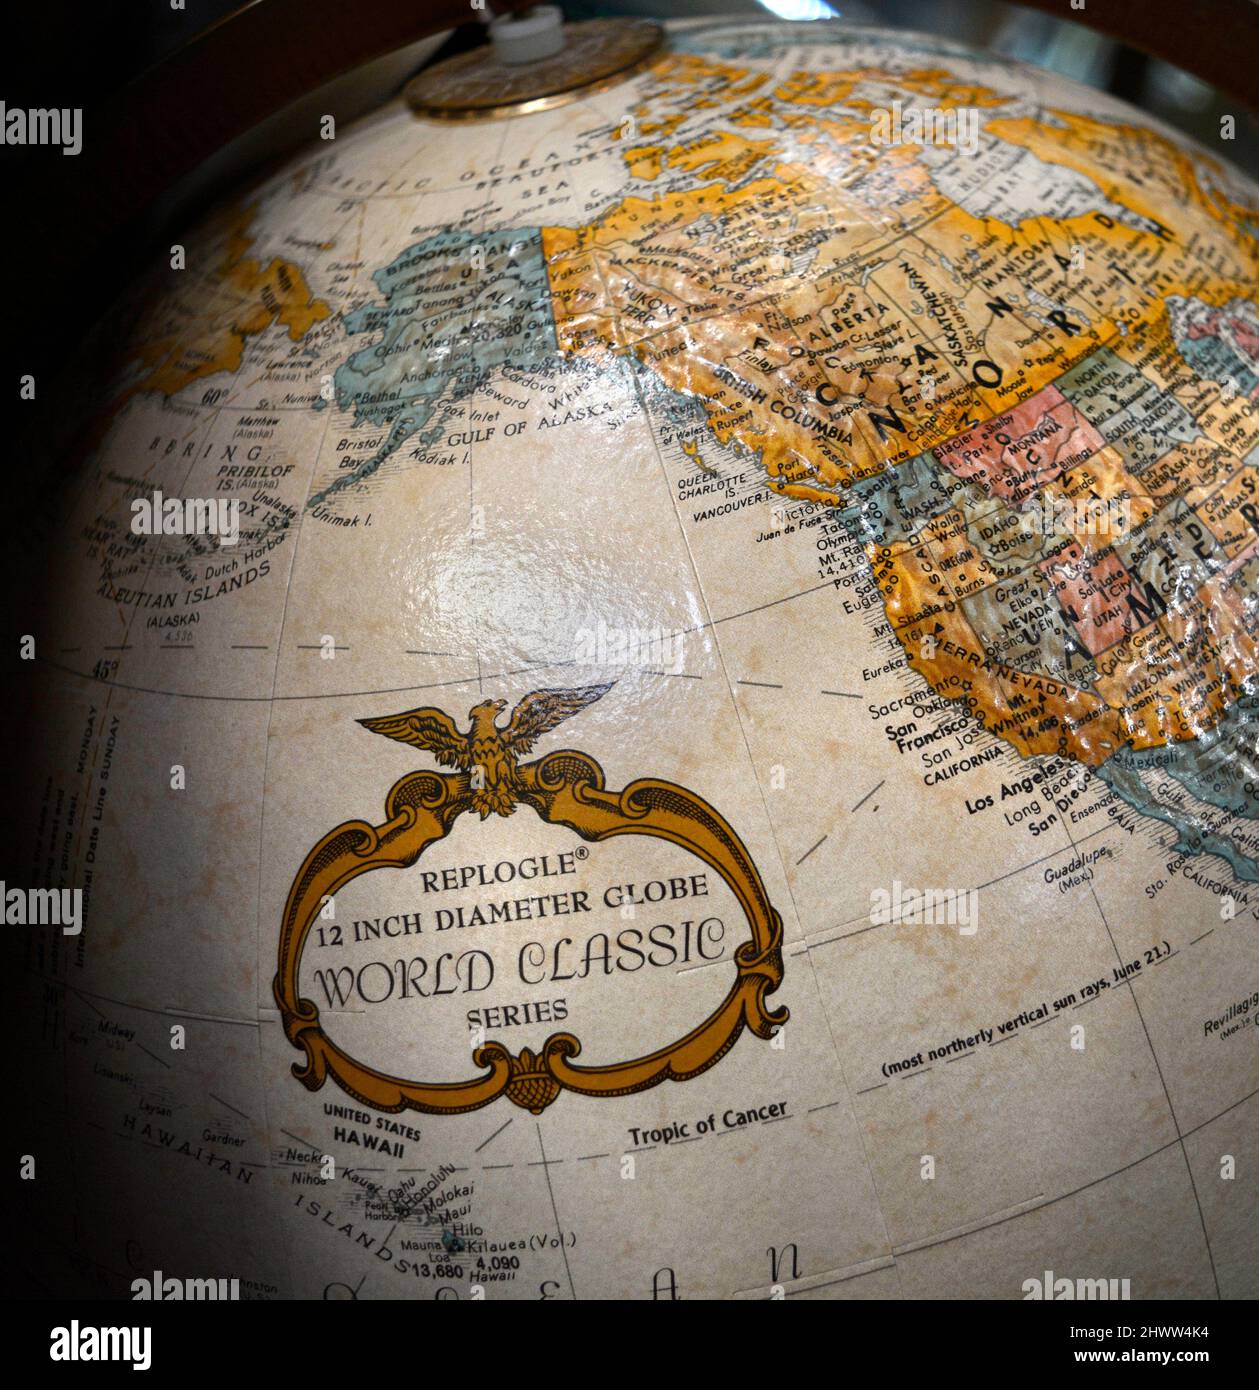 Un globo d'epoca di Replogle in vendita in un negozio di antiquariato mostra l'Oceano Pacifico, l'Alaska, e la parte occidentale degli Stati Uniti e del Canada. Foto Stock